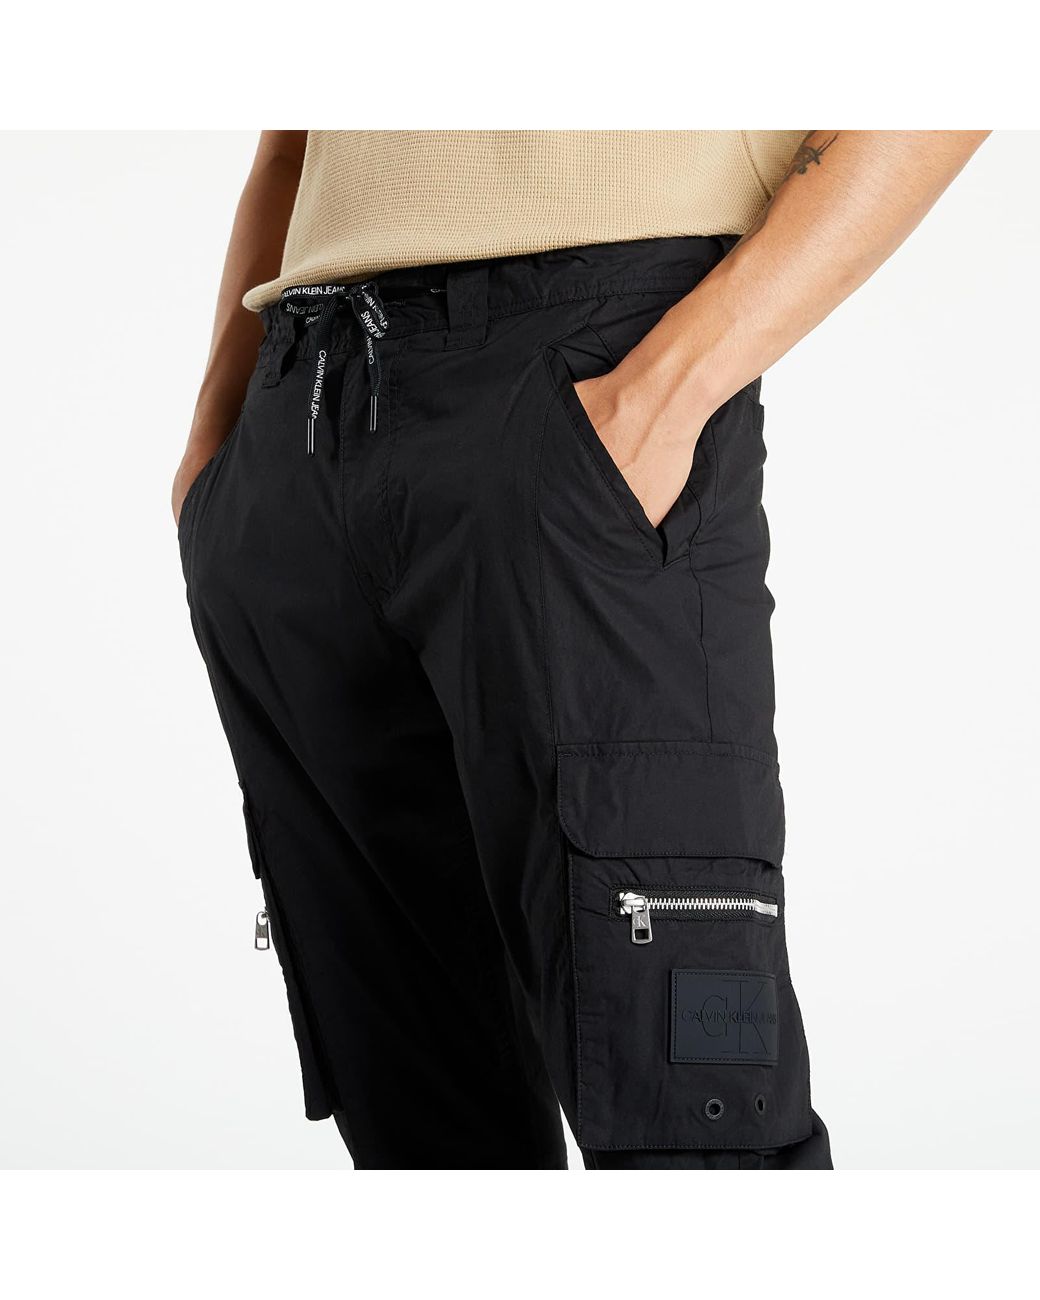 Buy Grey Trousers  Pants for Men by SPYKAR Online  Ajiocom